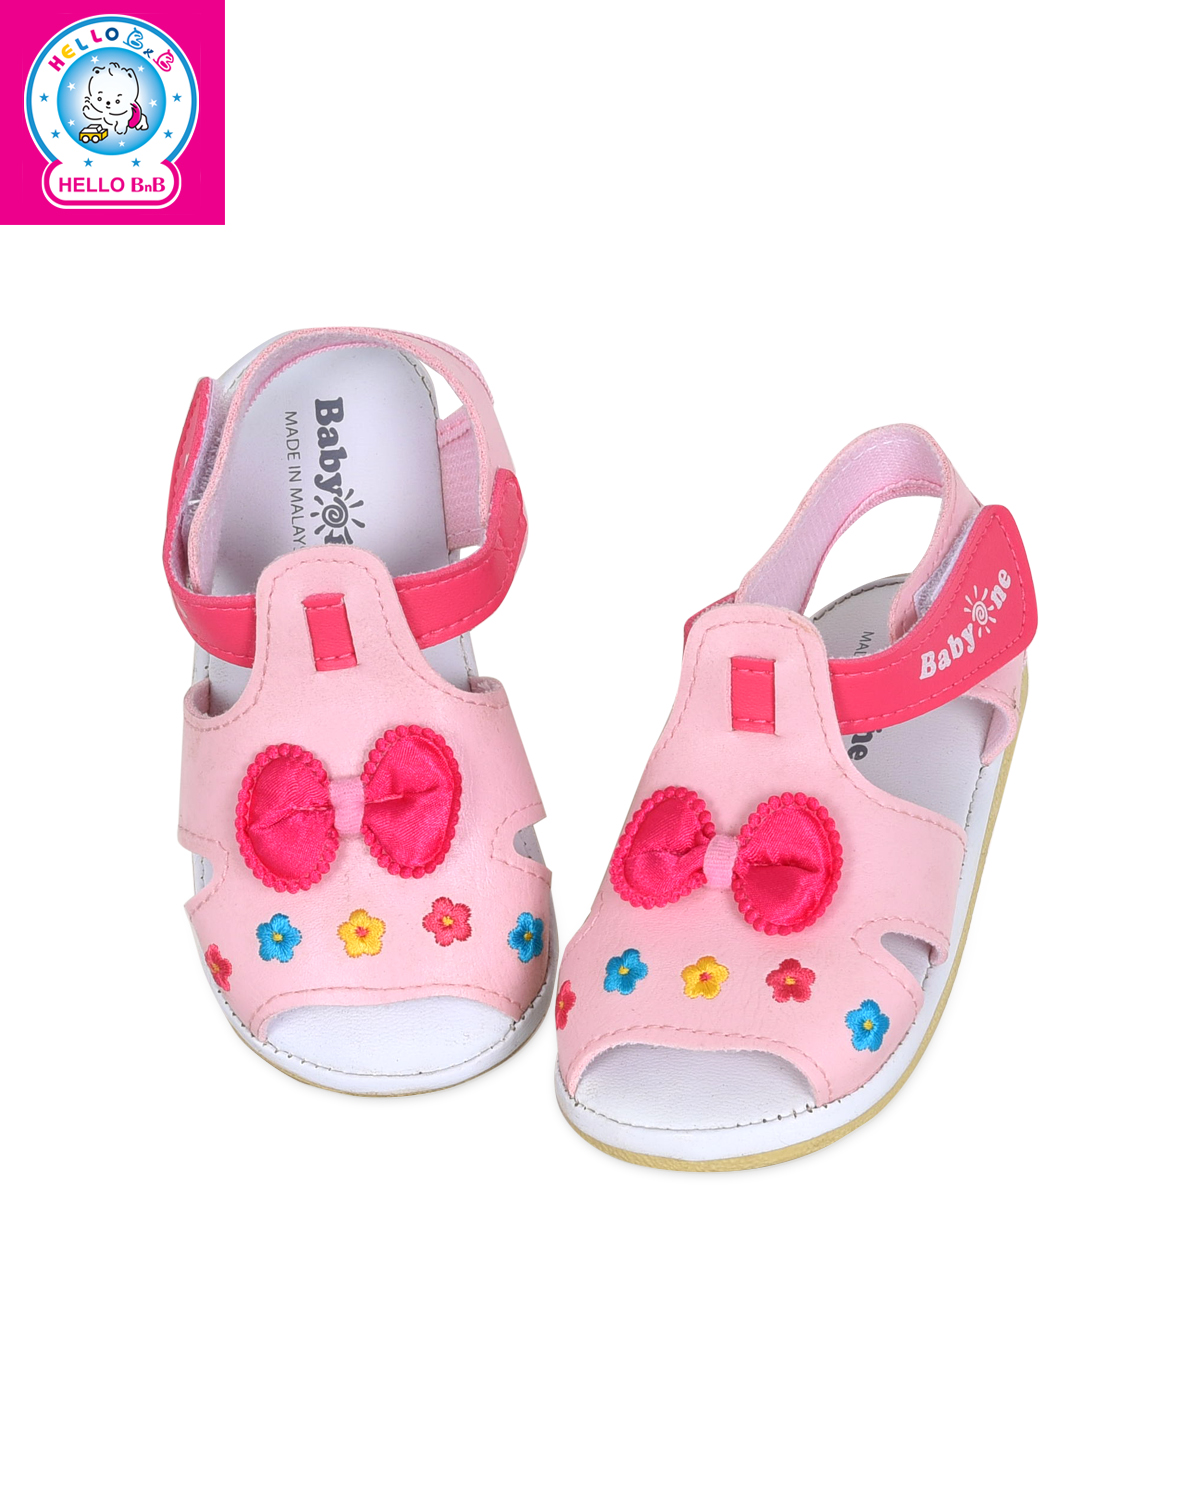 Giày sandal BabyOne 0811 size 19 Pink